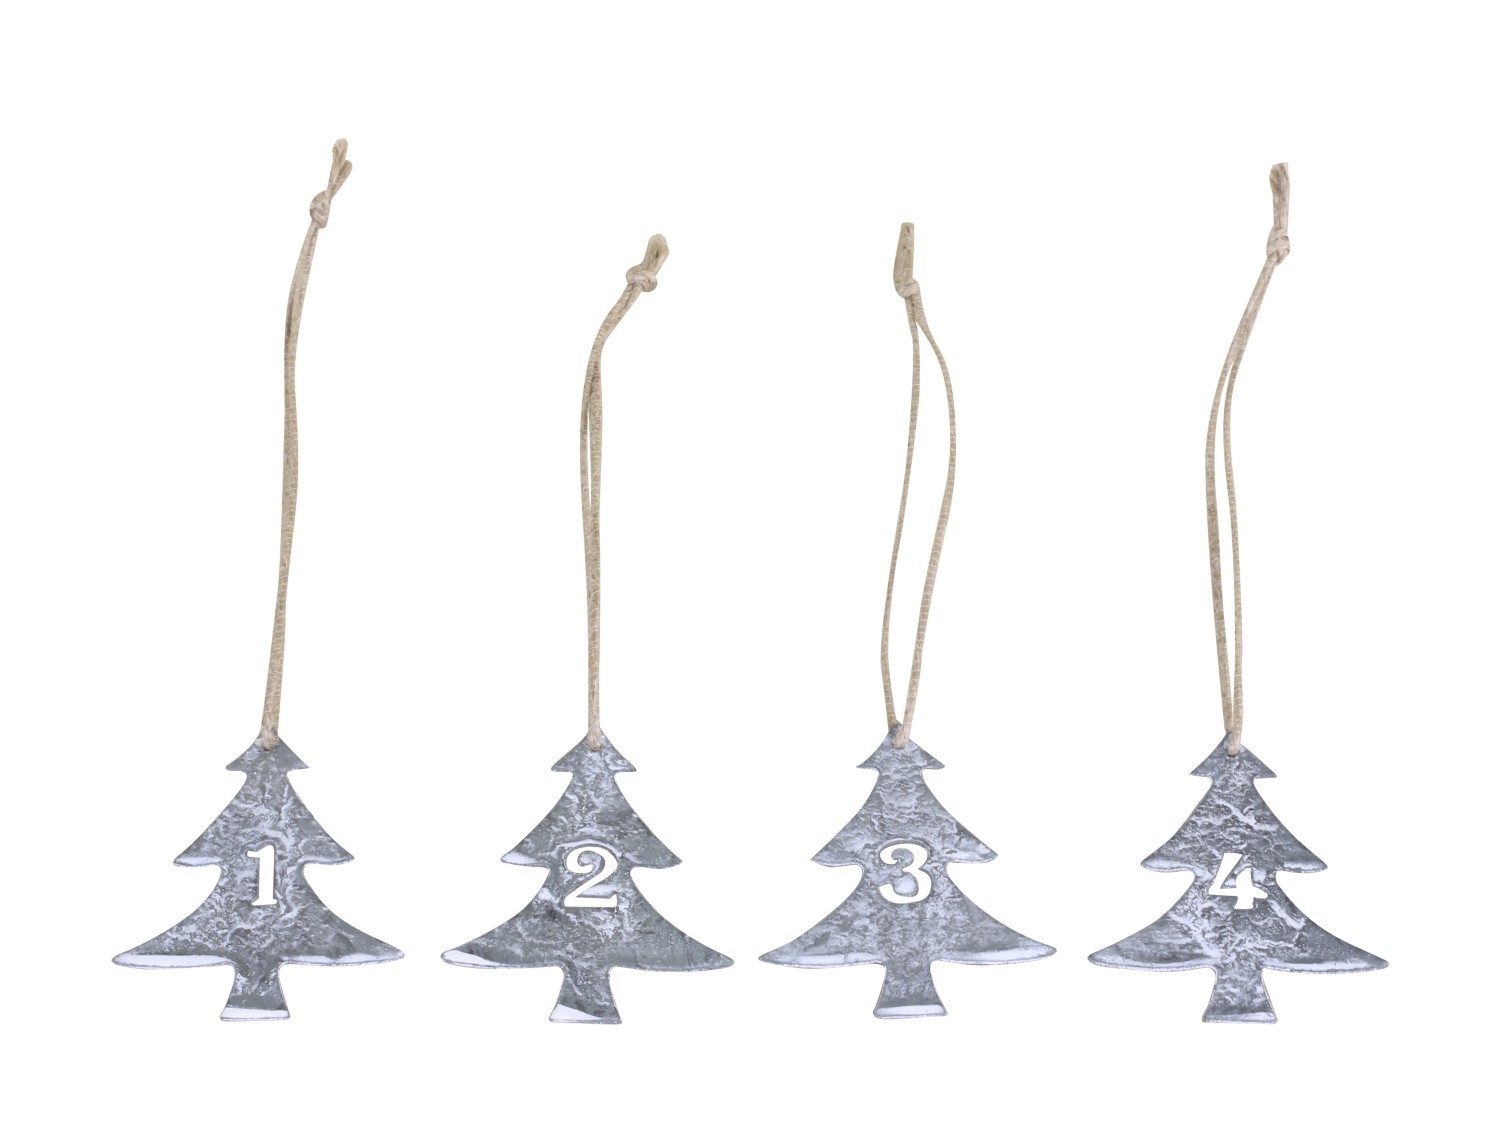 Šedé kovové vánoční stromky s čísly 1-4 na svíčky - 5*6cm 52024-00